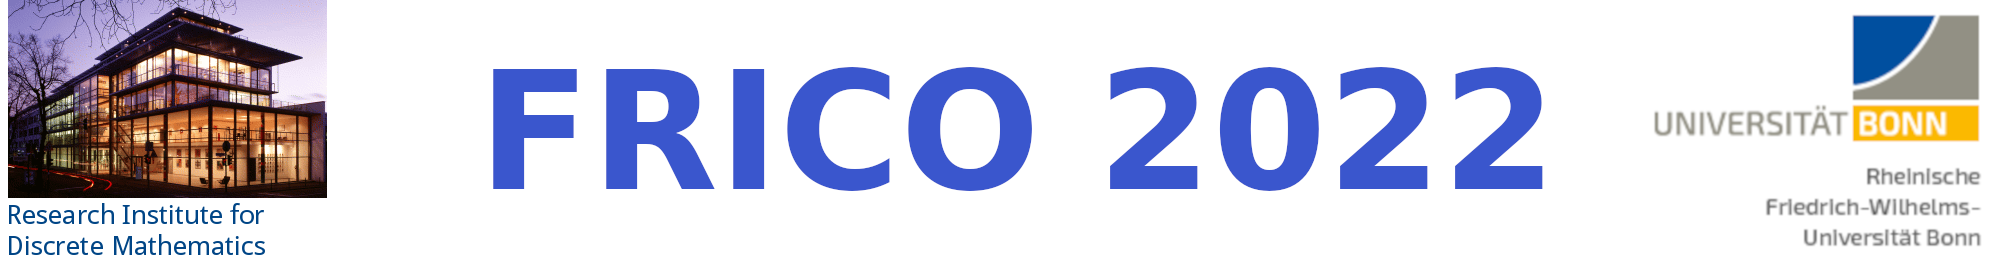 Ipco2014 logo